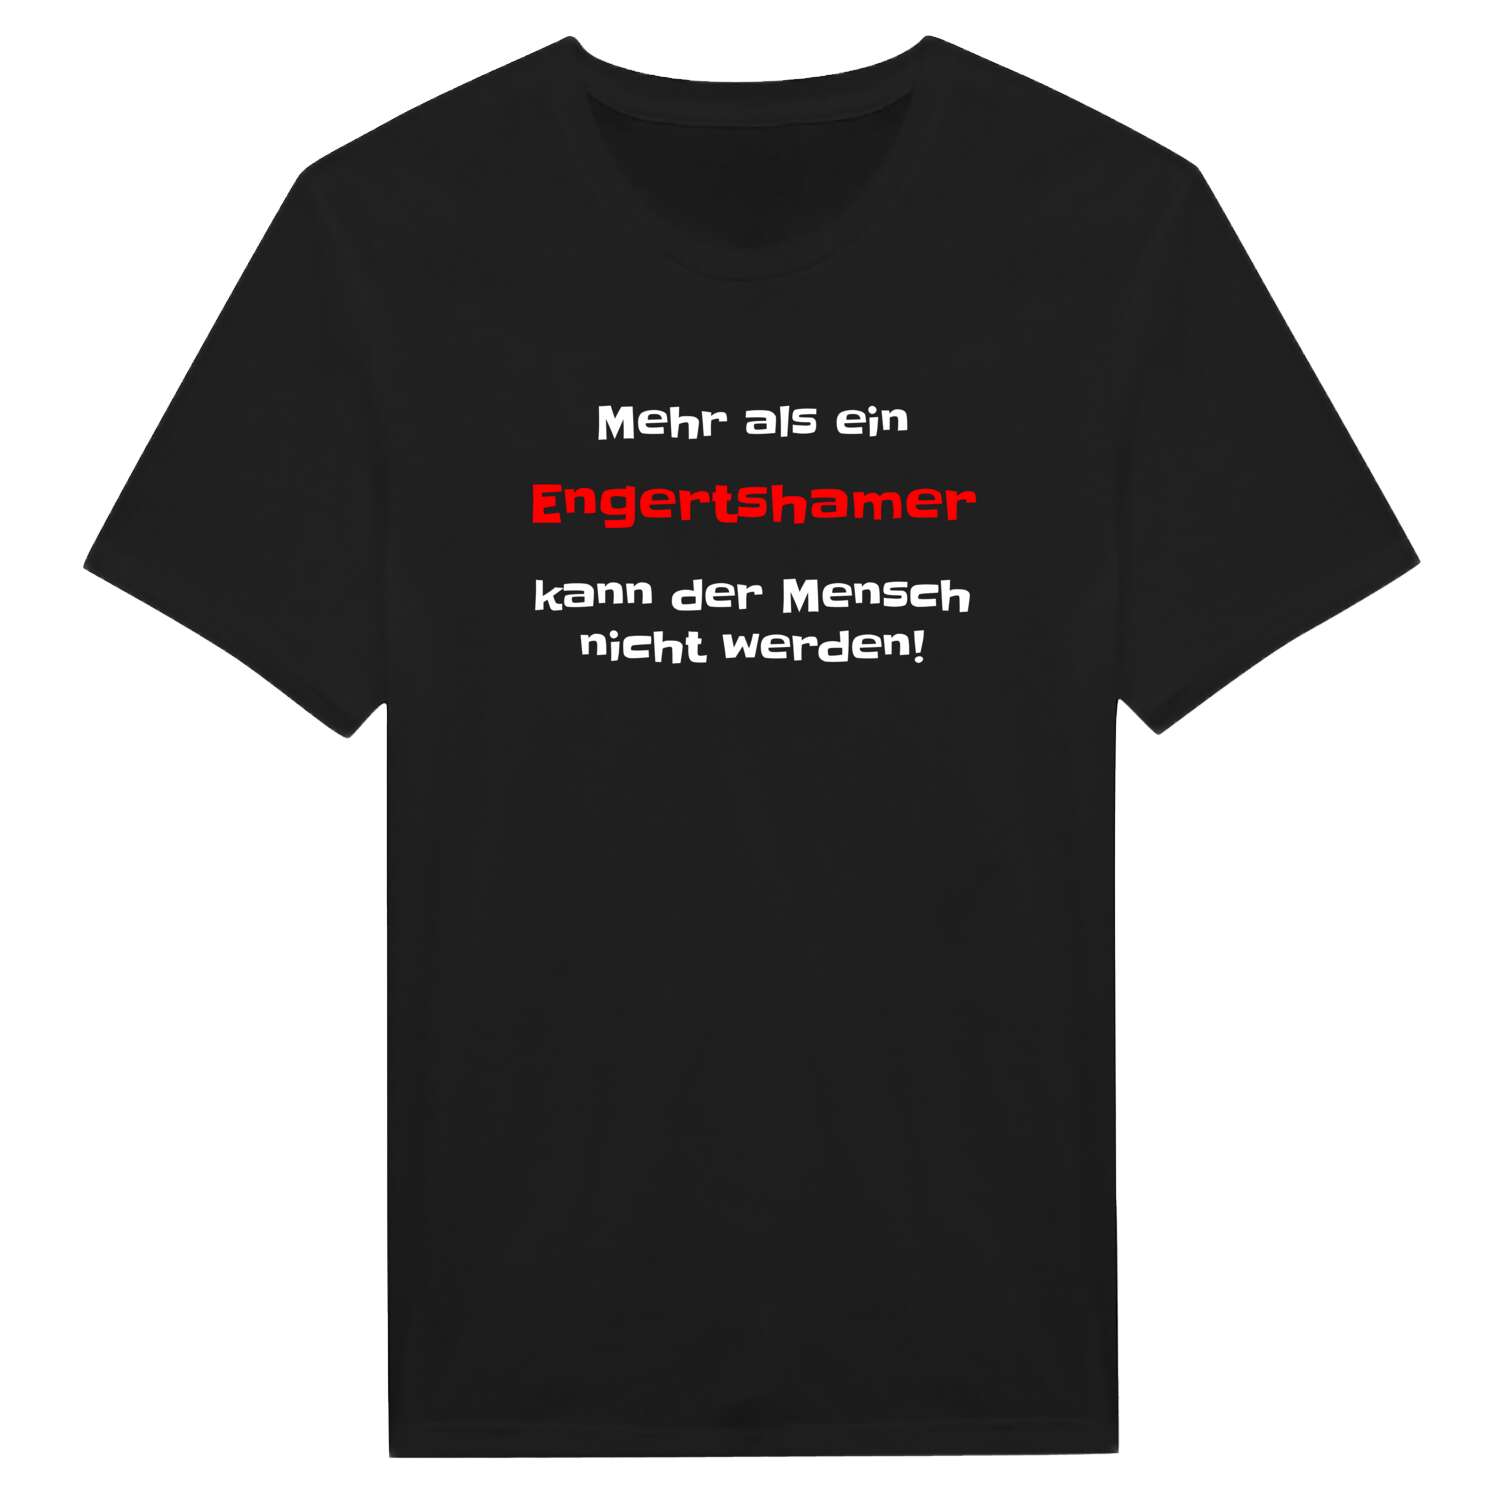 Engertsham T-Shirt »Mehr als ein«